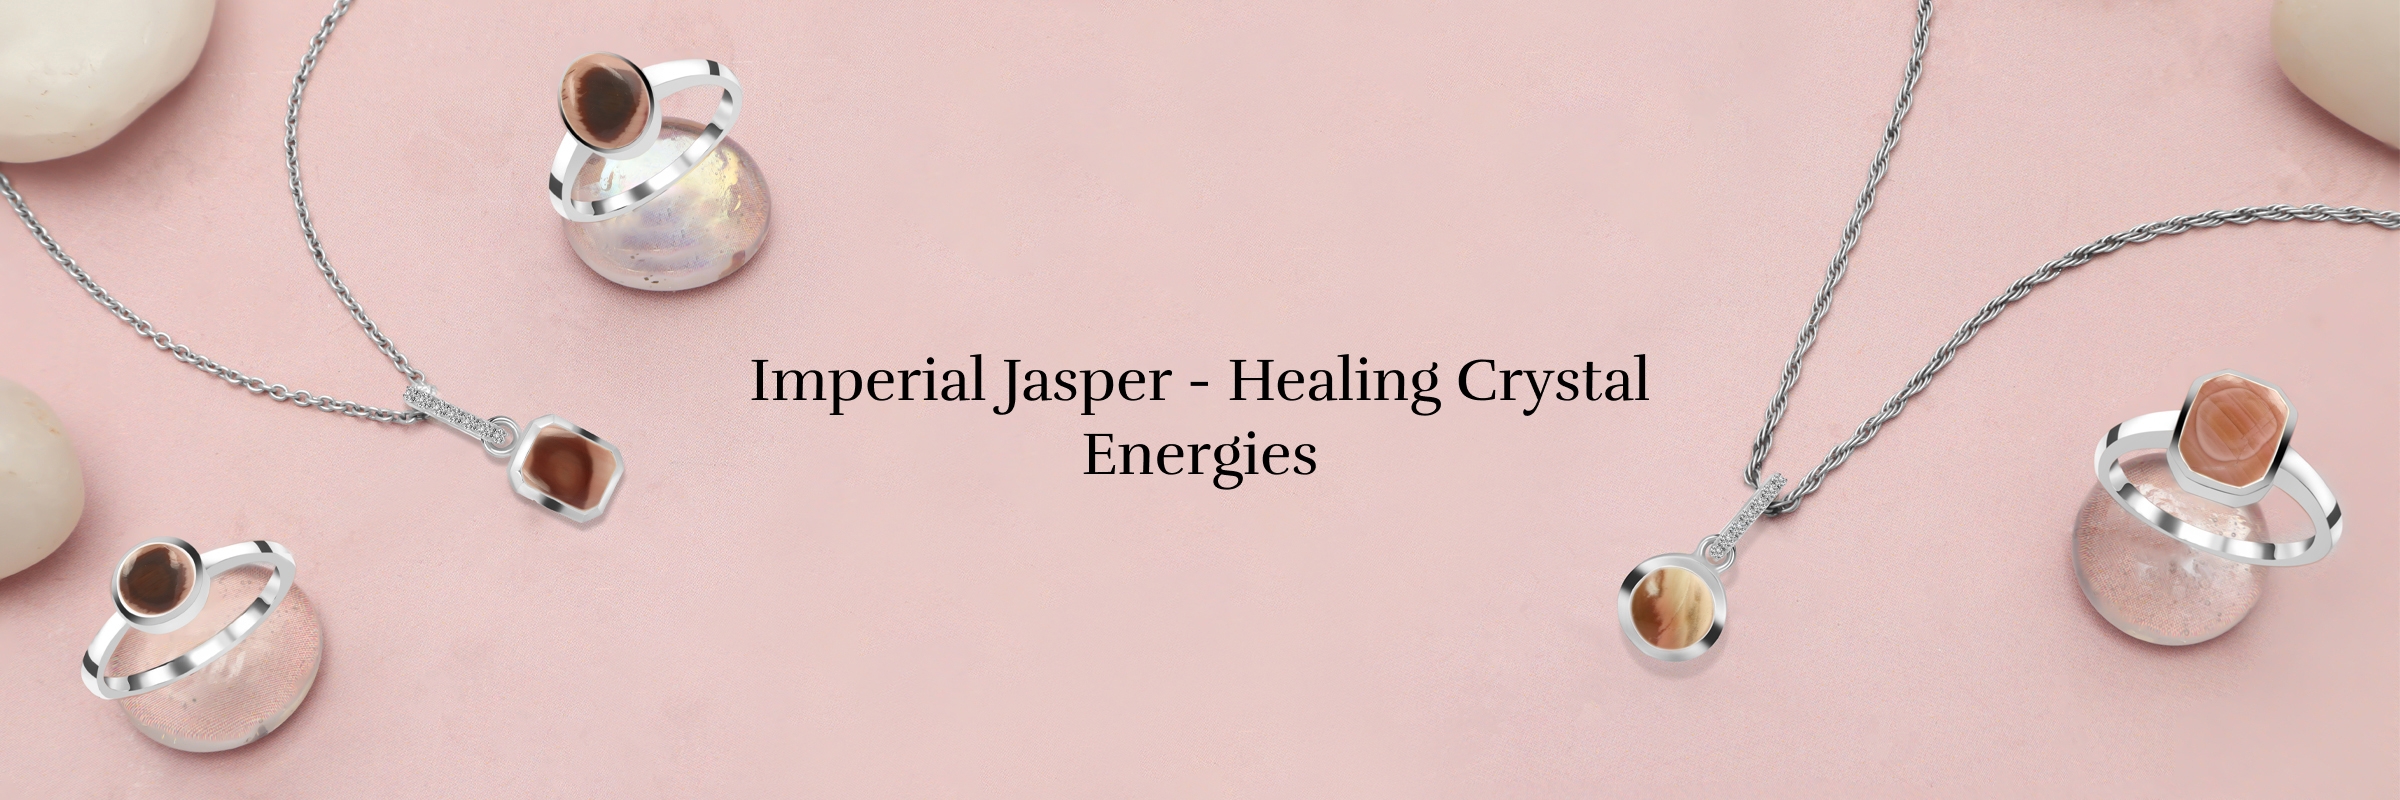 Healing Properties of Imperial Jasper Crystal